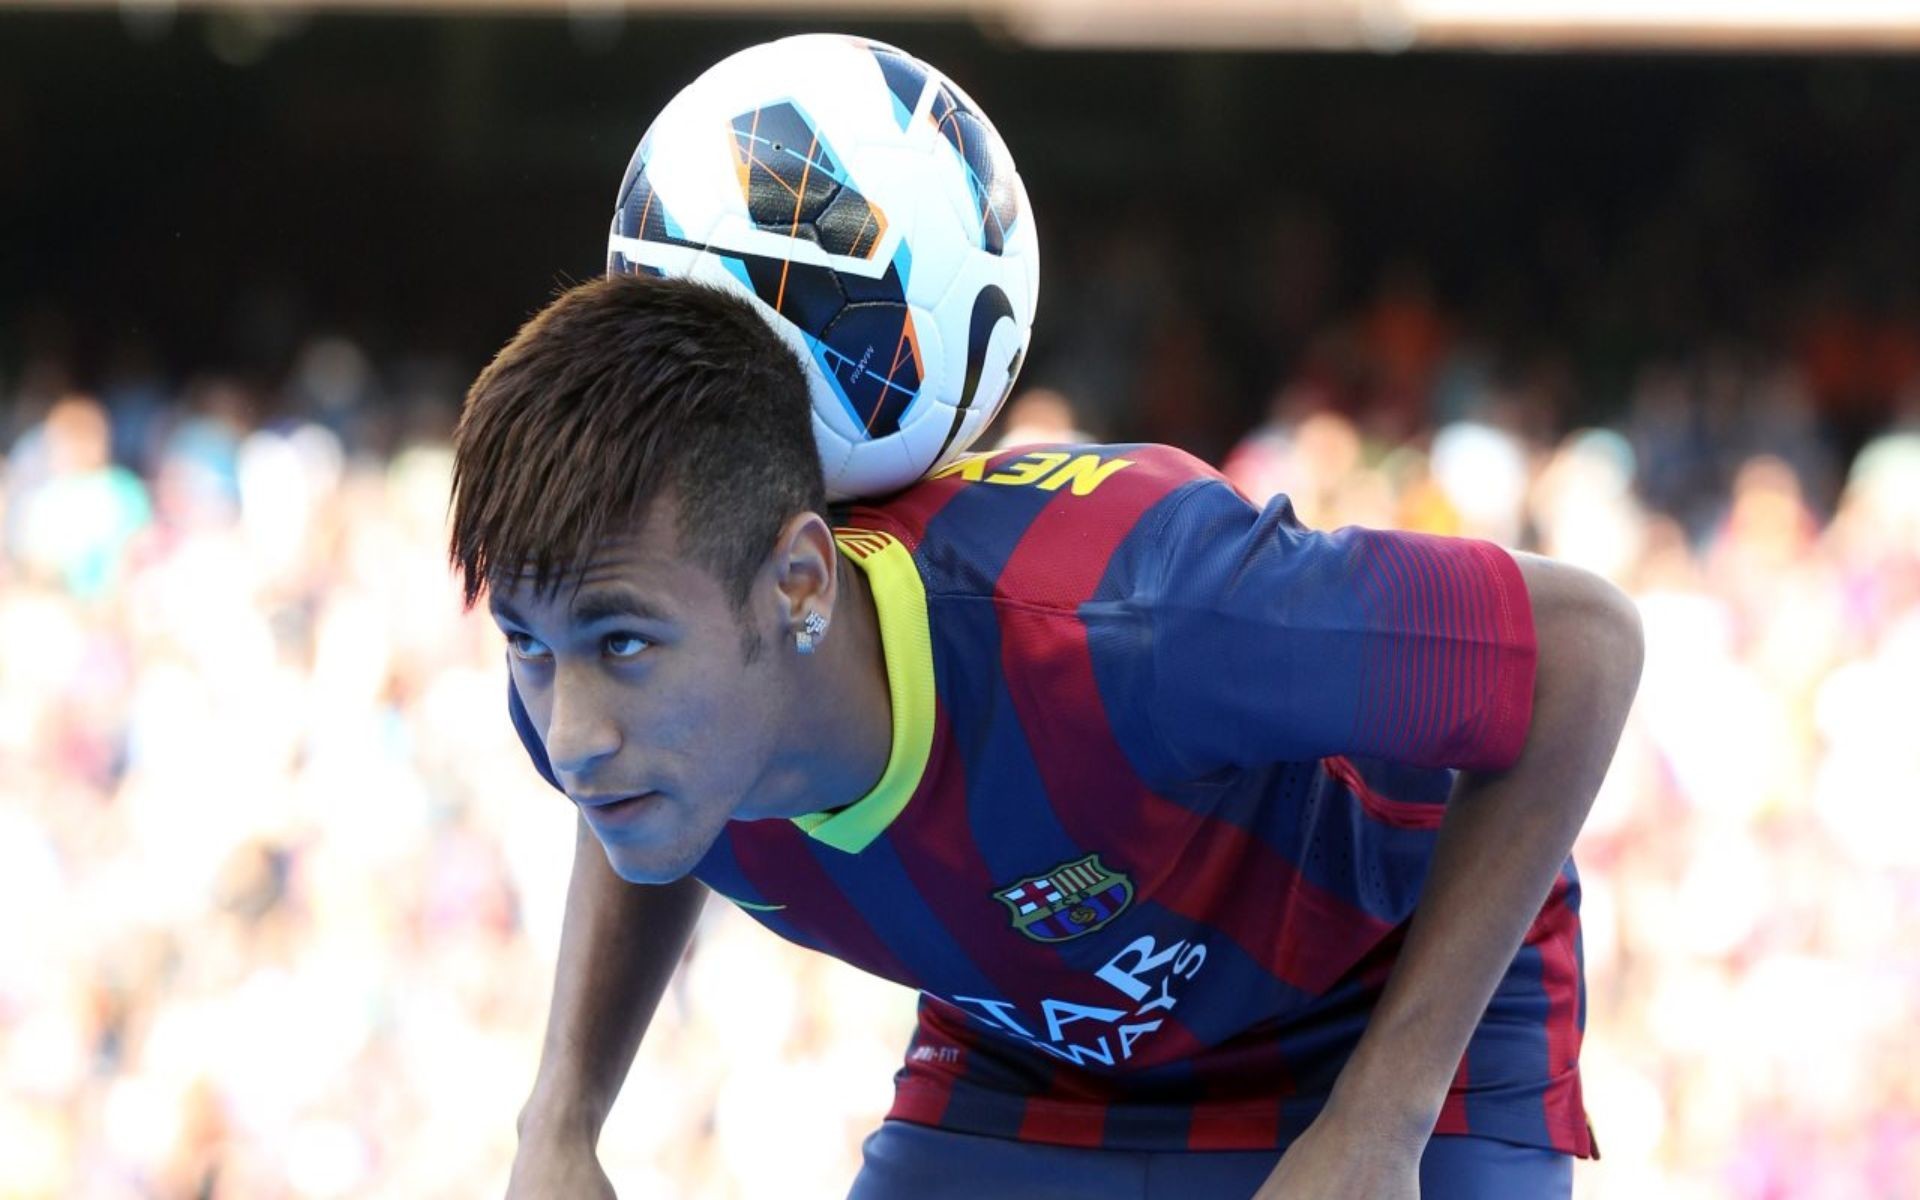 Neymar HD Wallpapers 2015